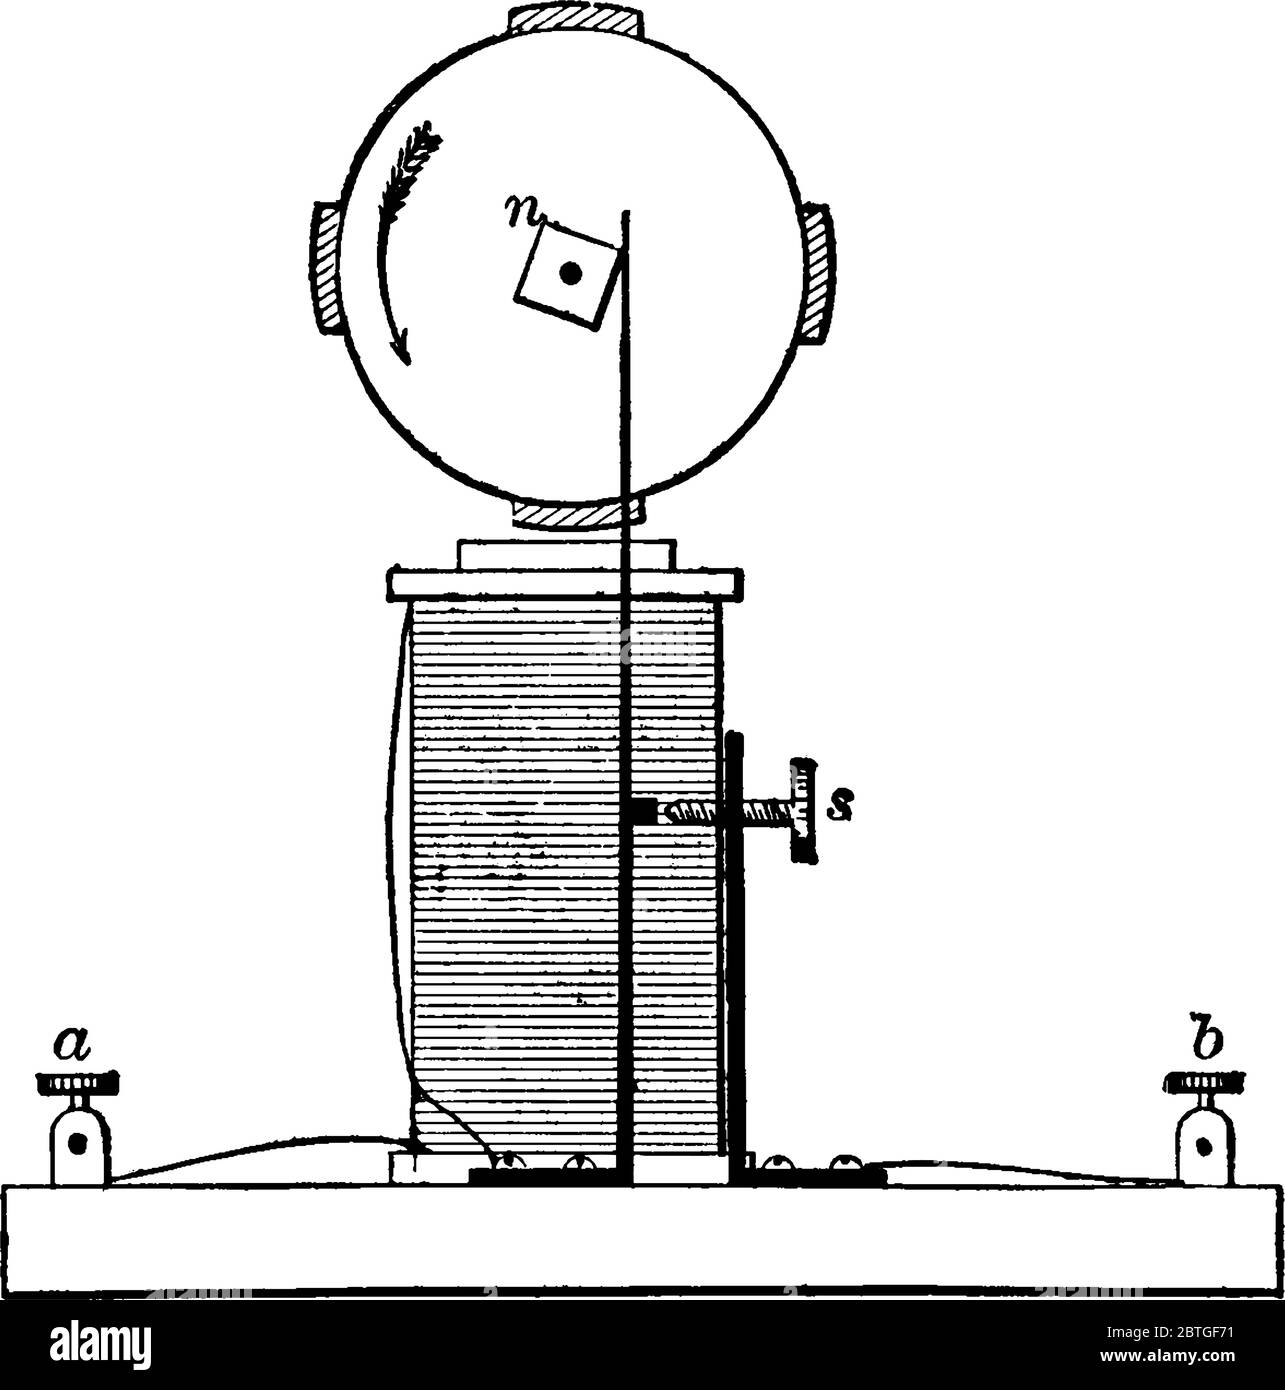 Eine typische Darstellung eines Elektromotors, der eine quadratische Mutter verwendet, um den Elektromagneten zu aktivieren, der den Motor antribantrieb, Vintage-Linienzeichnung oder eine Vorauswahl Stock Vektor